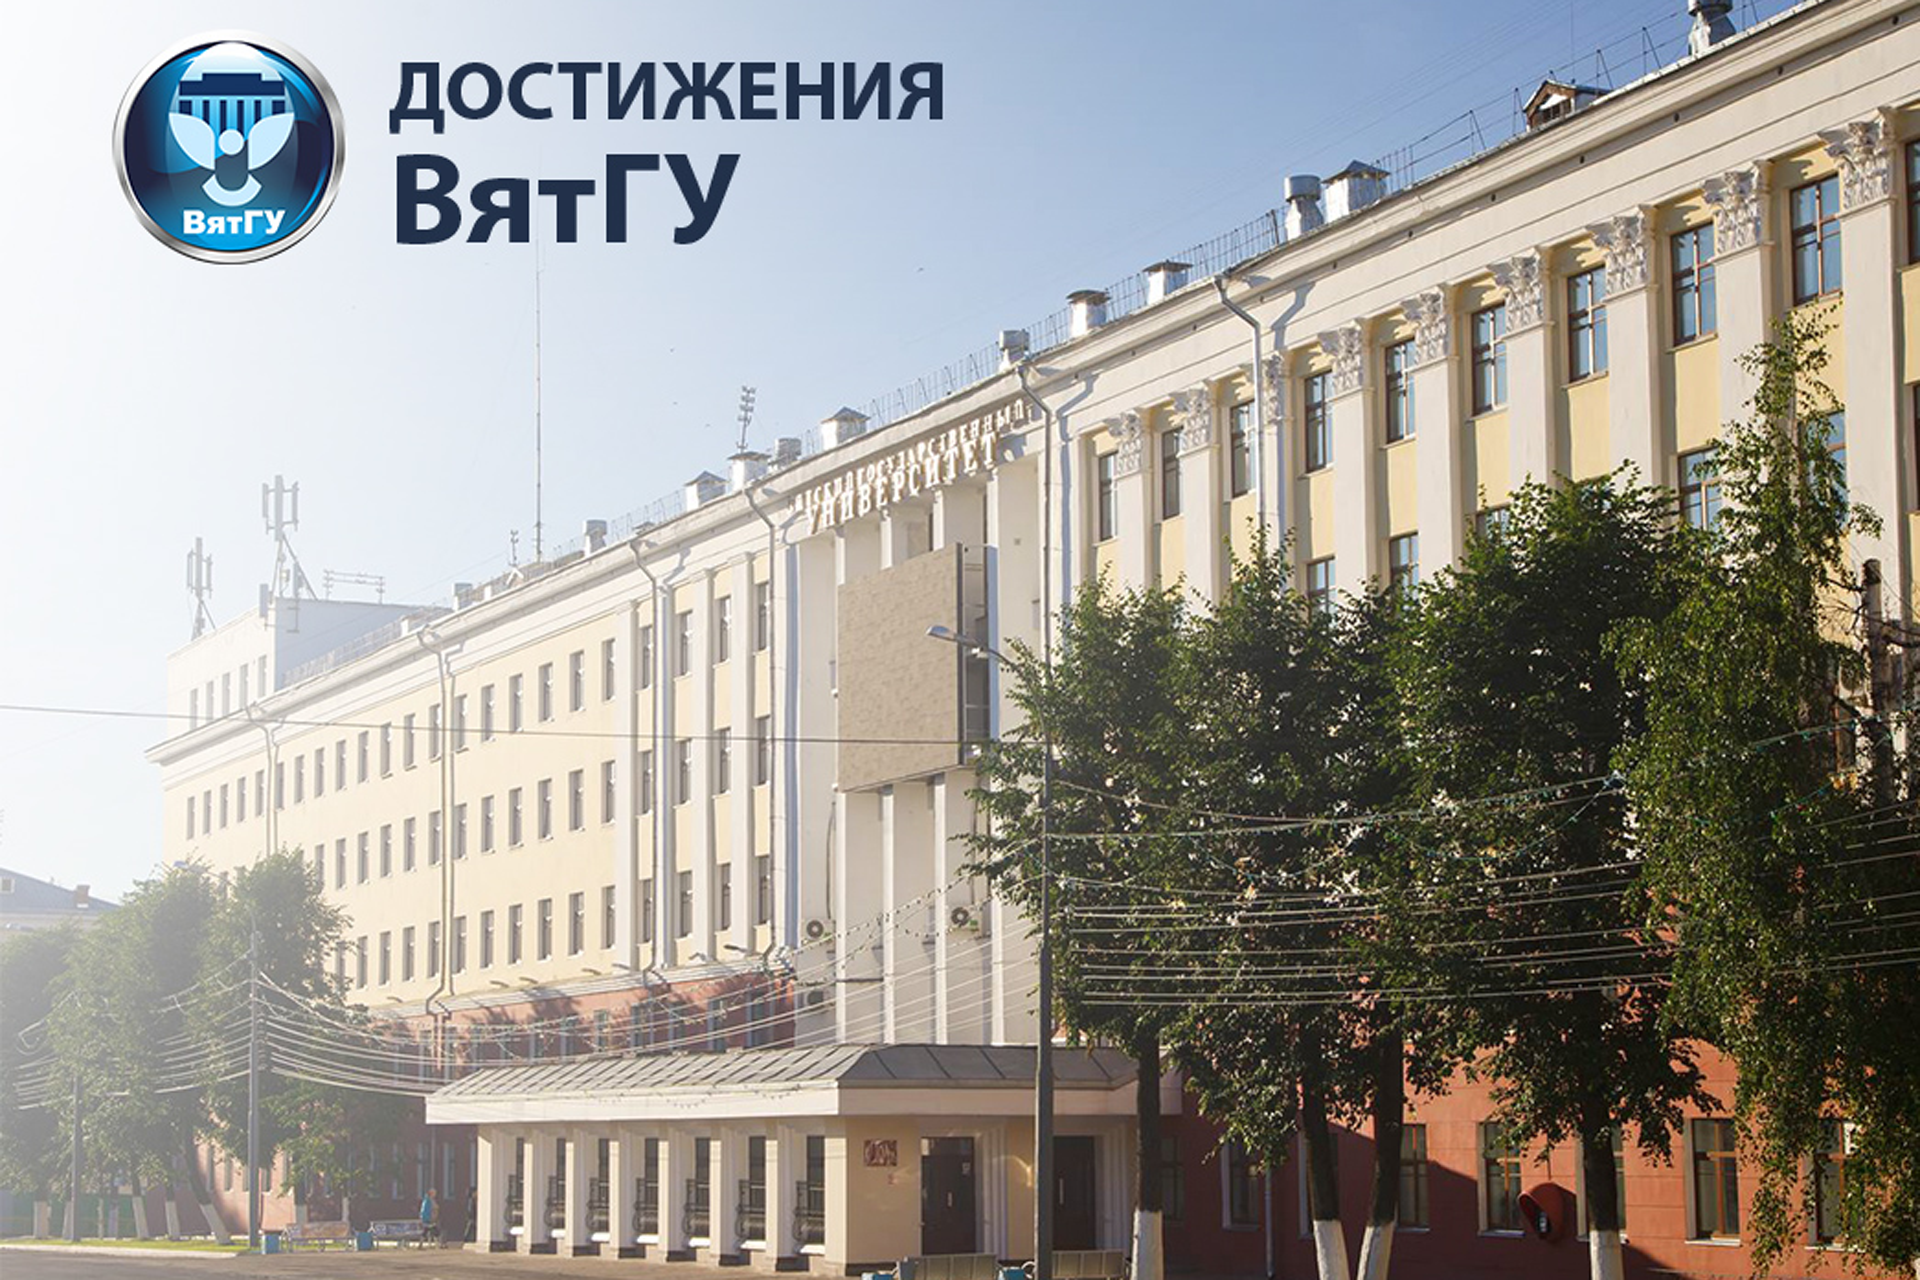 ВятГУ вошел в ТОП-50 рейтинга репутаций российских вузов в сфере «Экономика и управление»